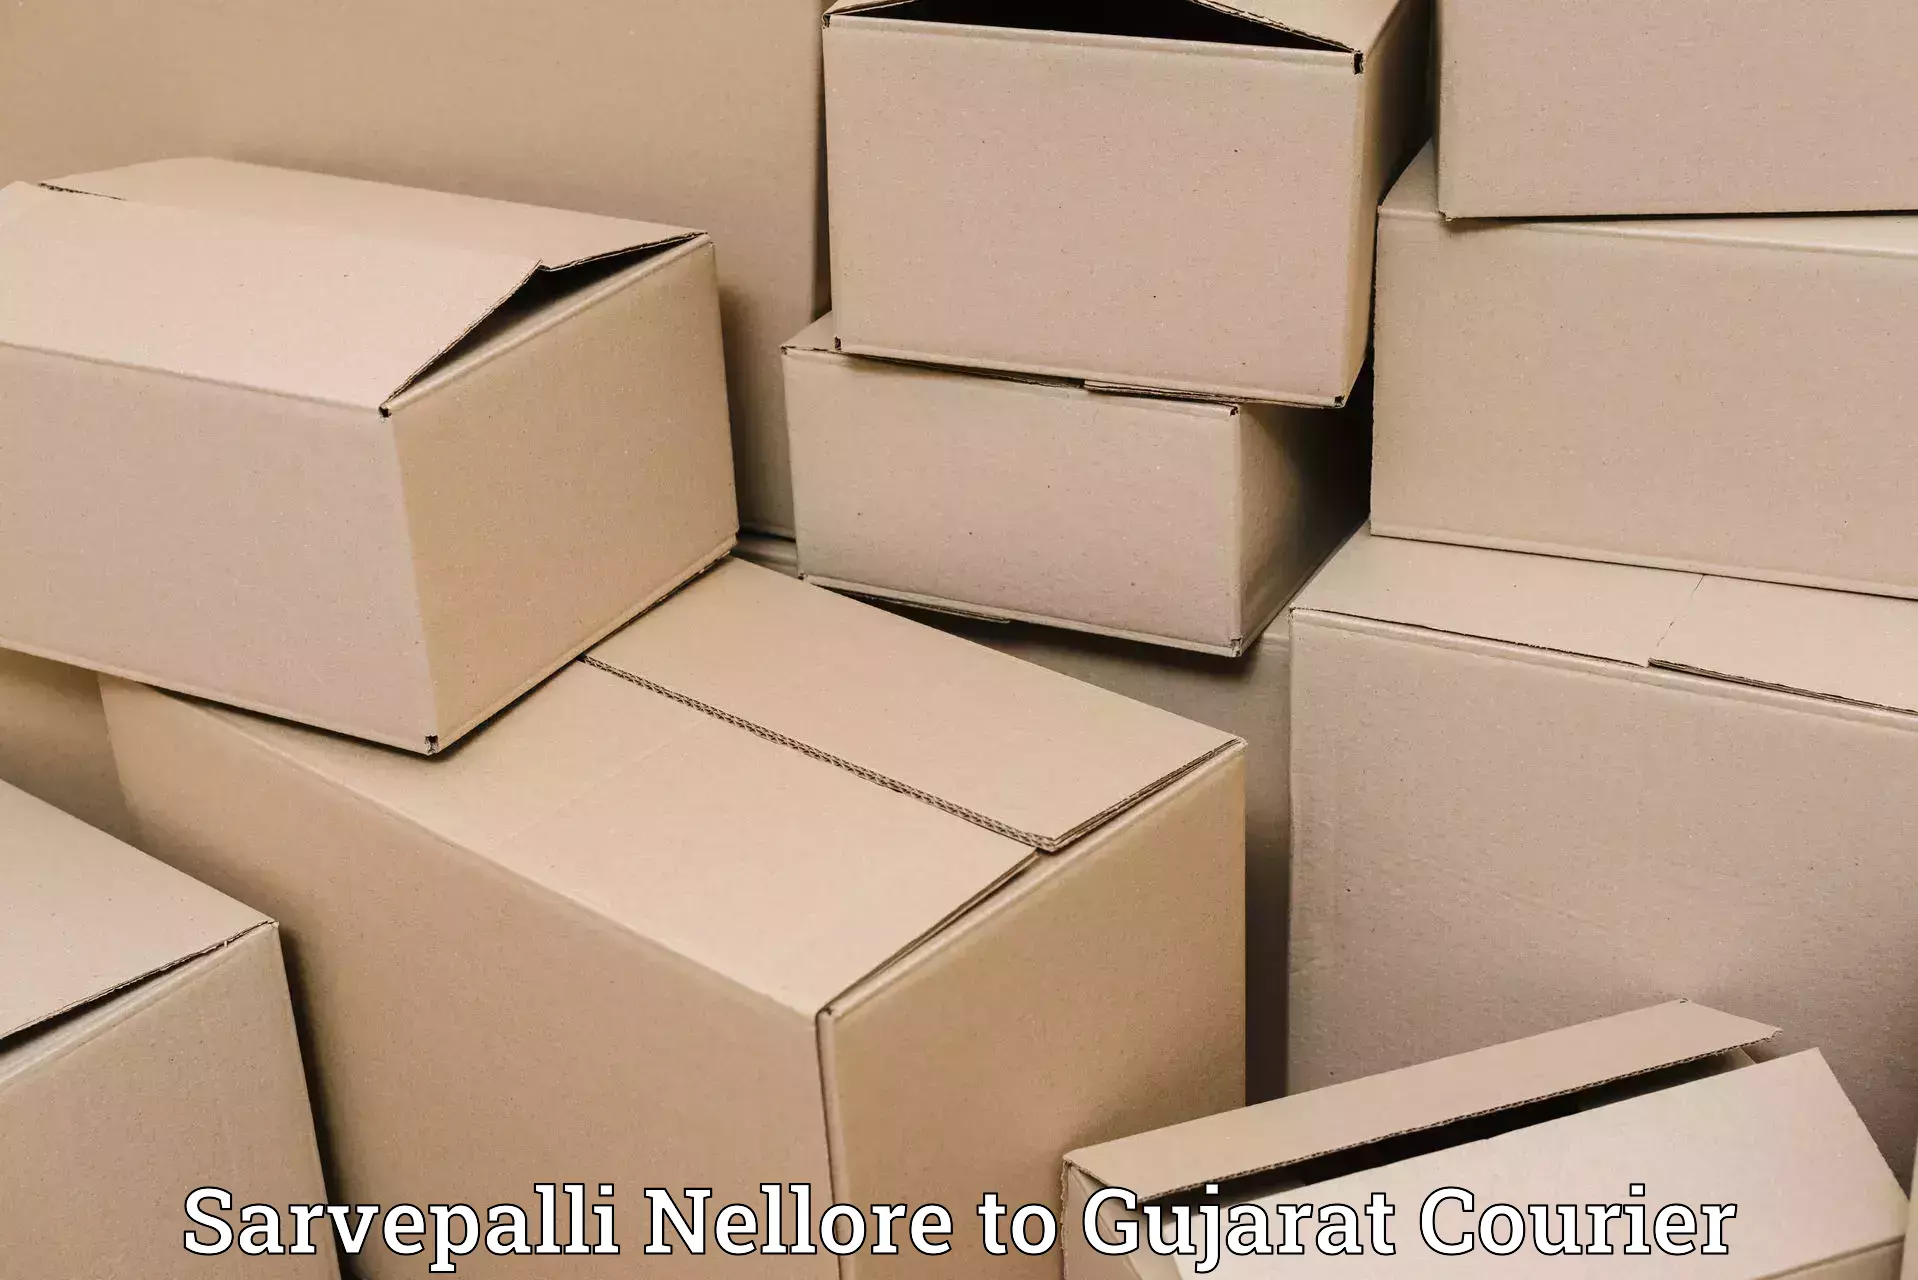 Luggage delivery network Sarvepalli Nellore to Gujarat